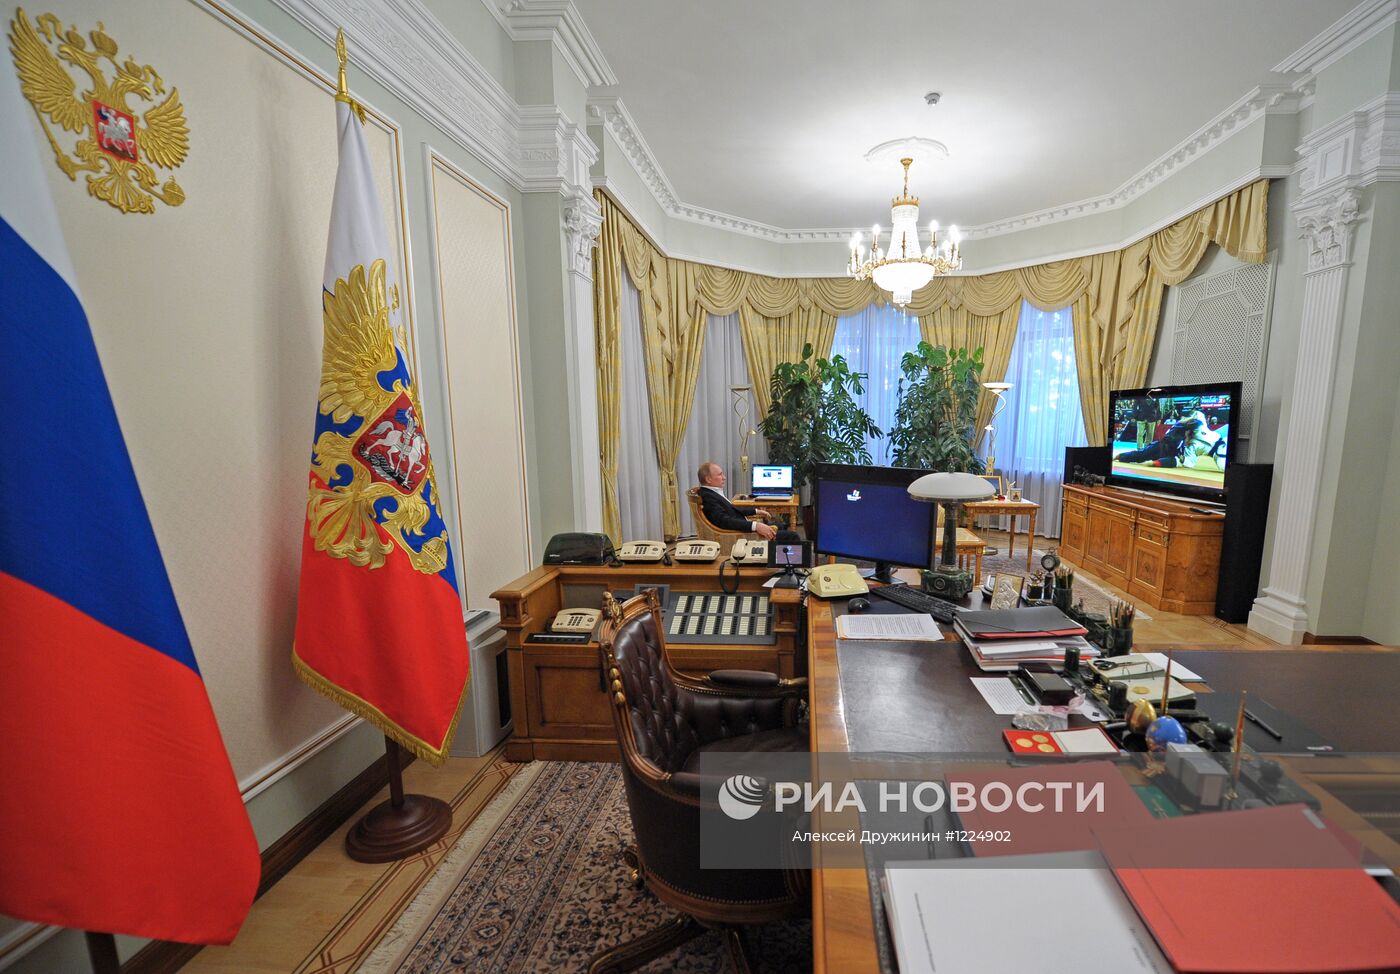 Резиденция Путина в Ново-Огарево кабинет